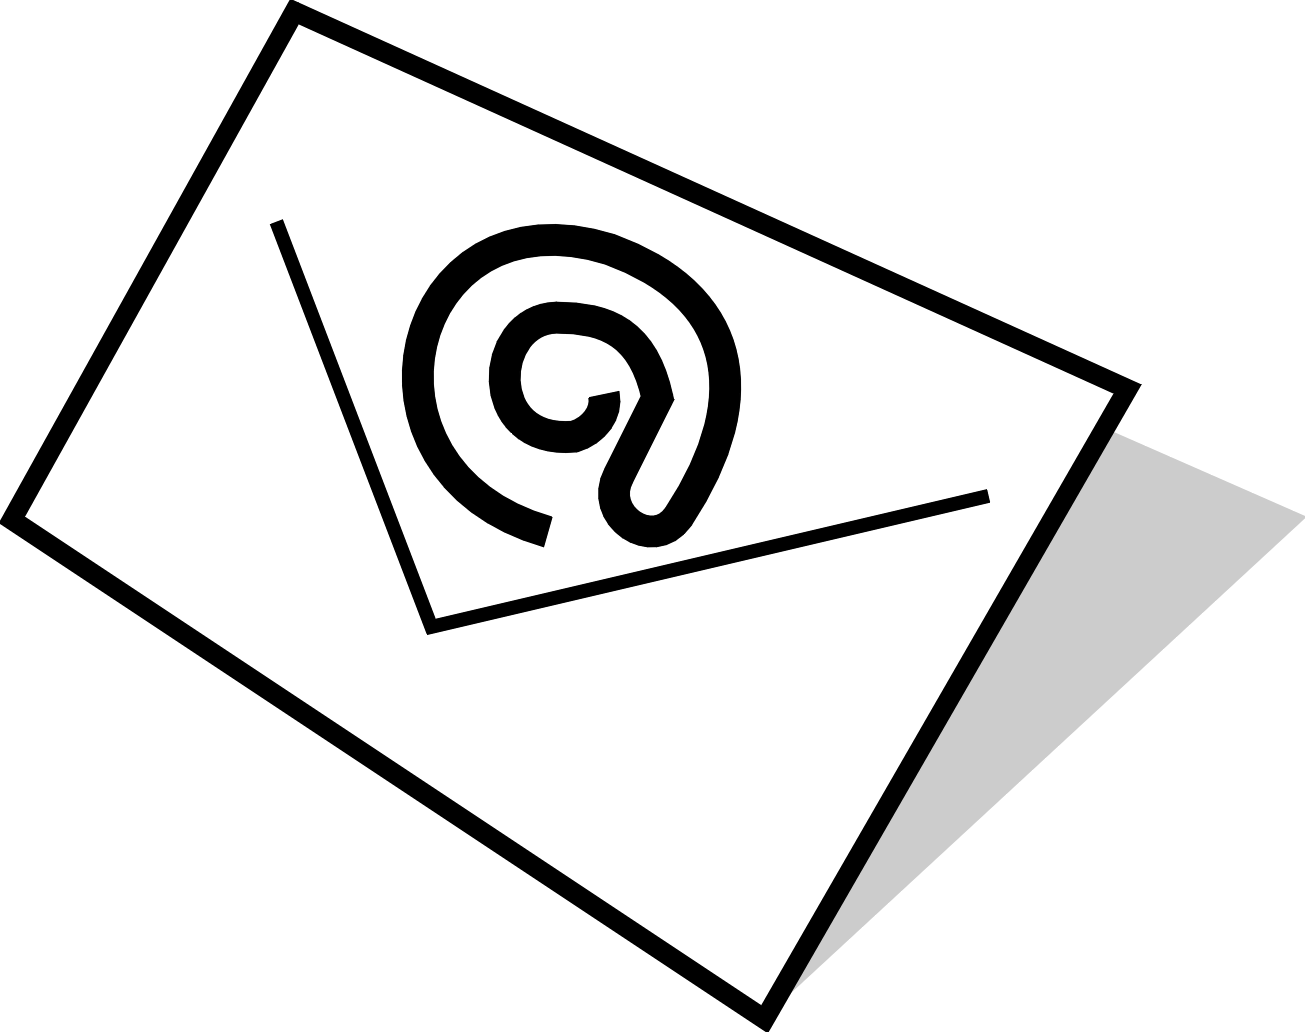 Email logo clip art at vector clip art image - Clipartix